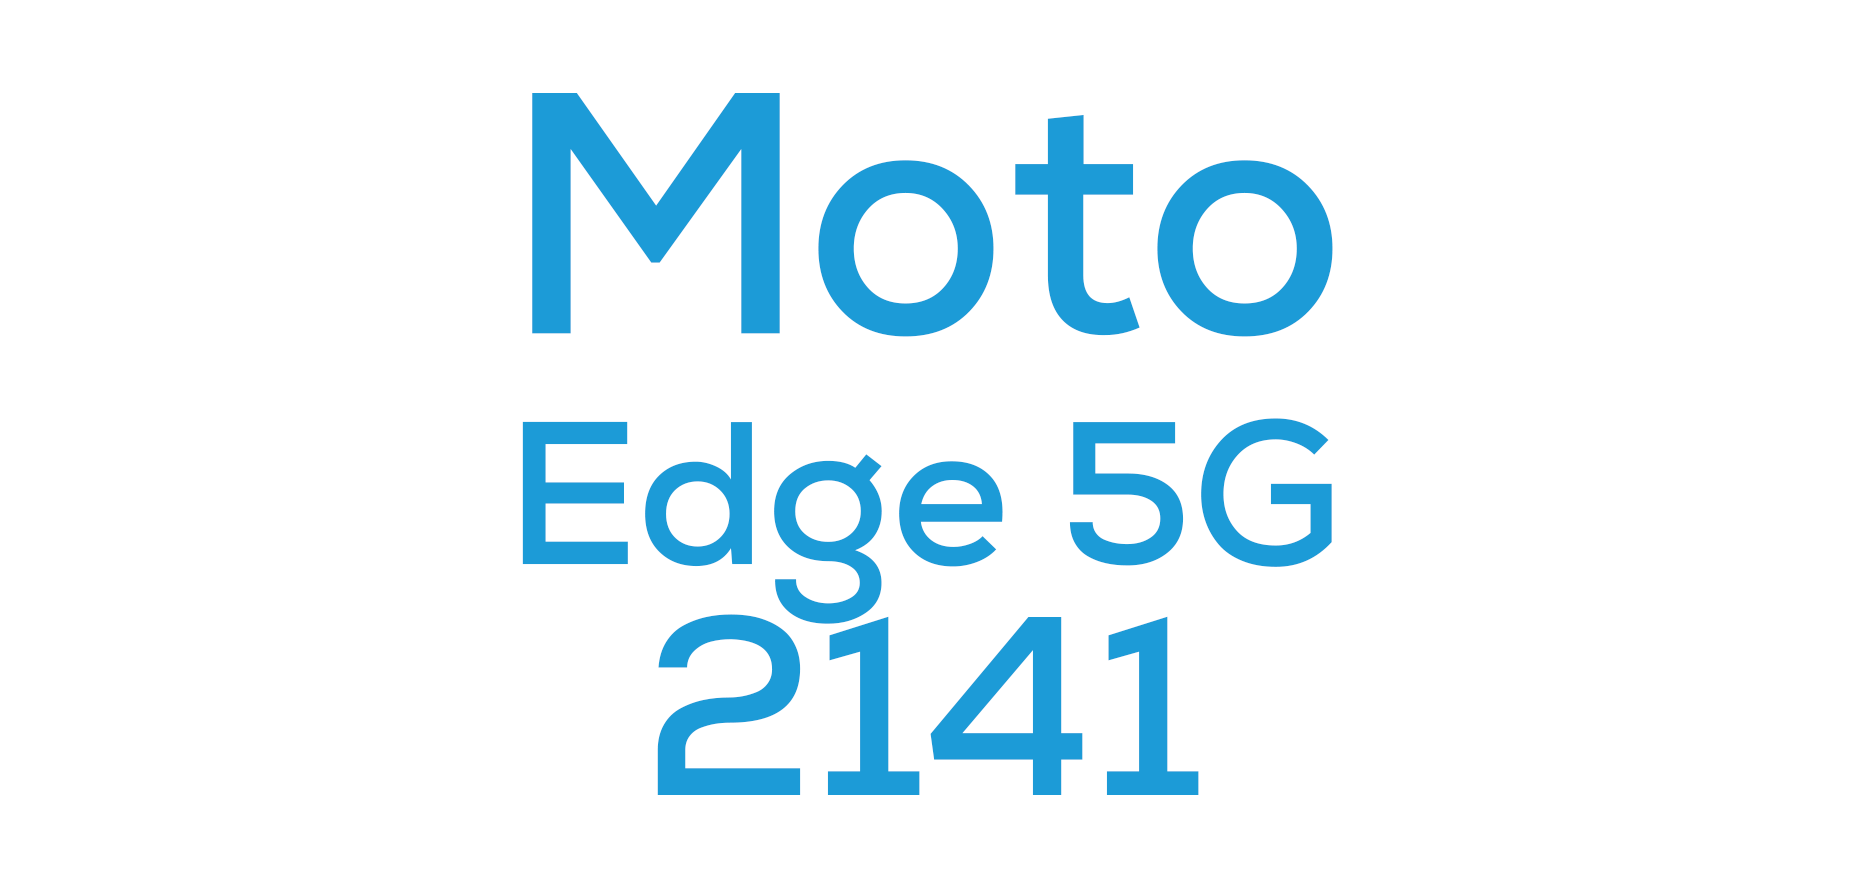 Moto Edge 5G (2141)